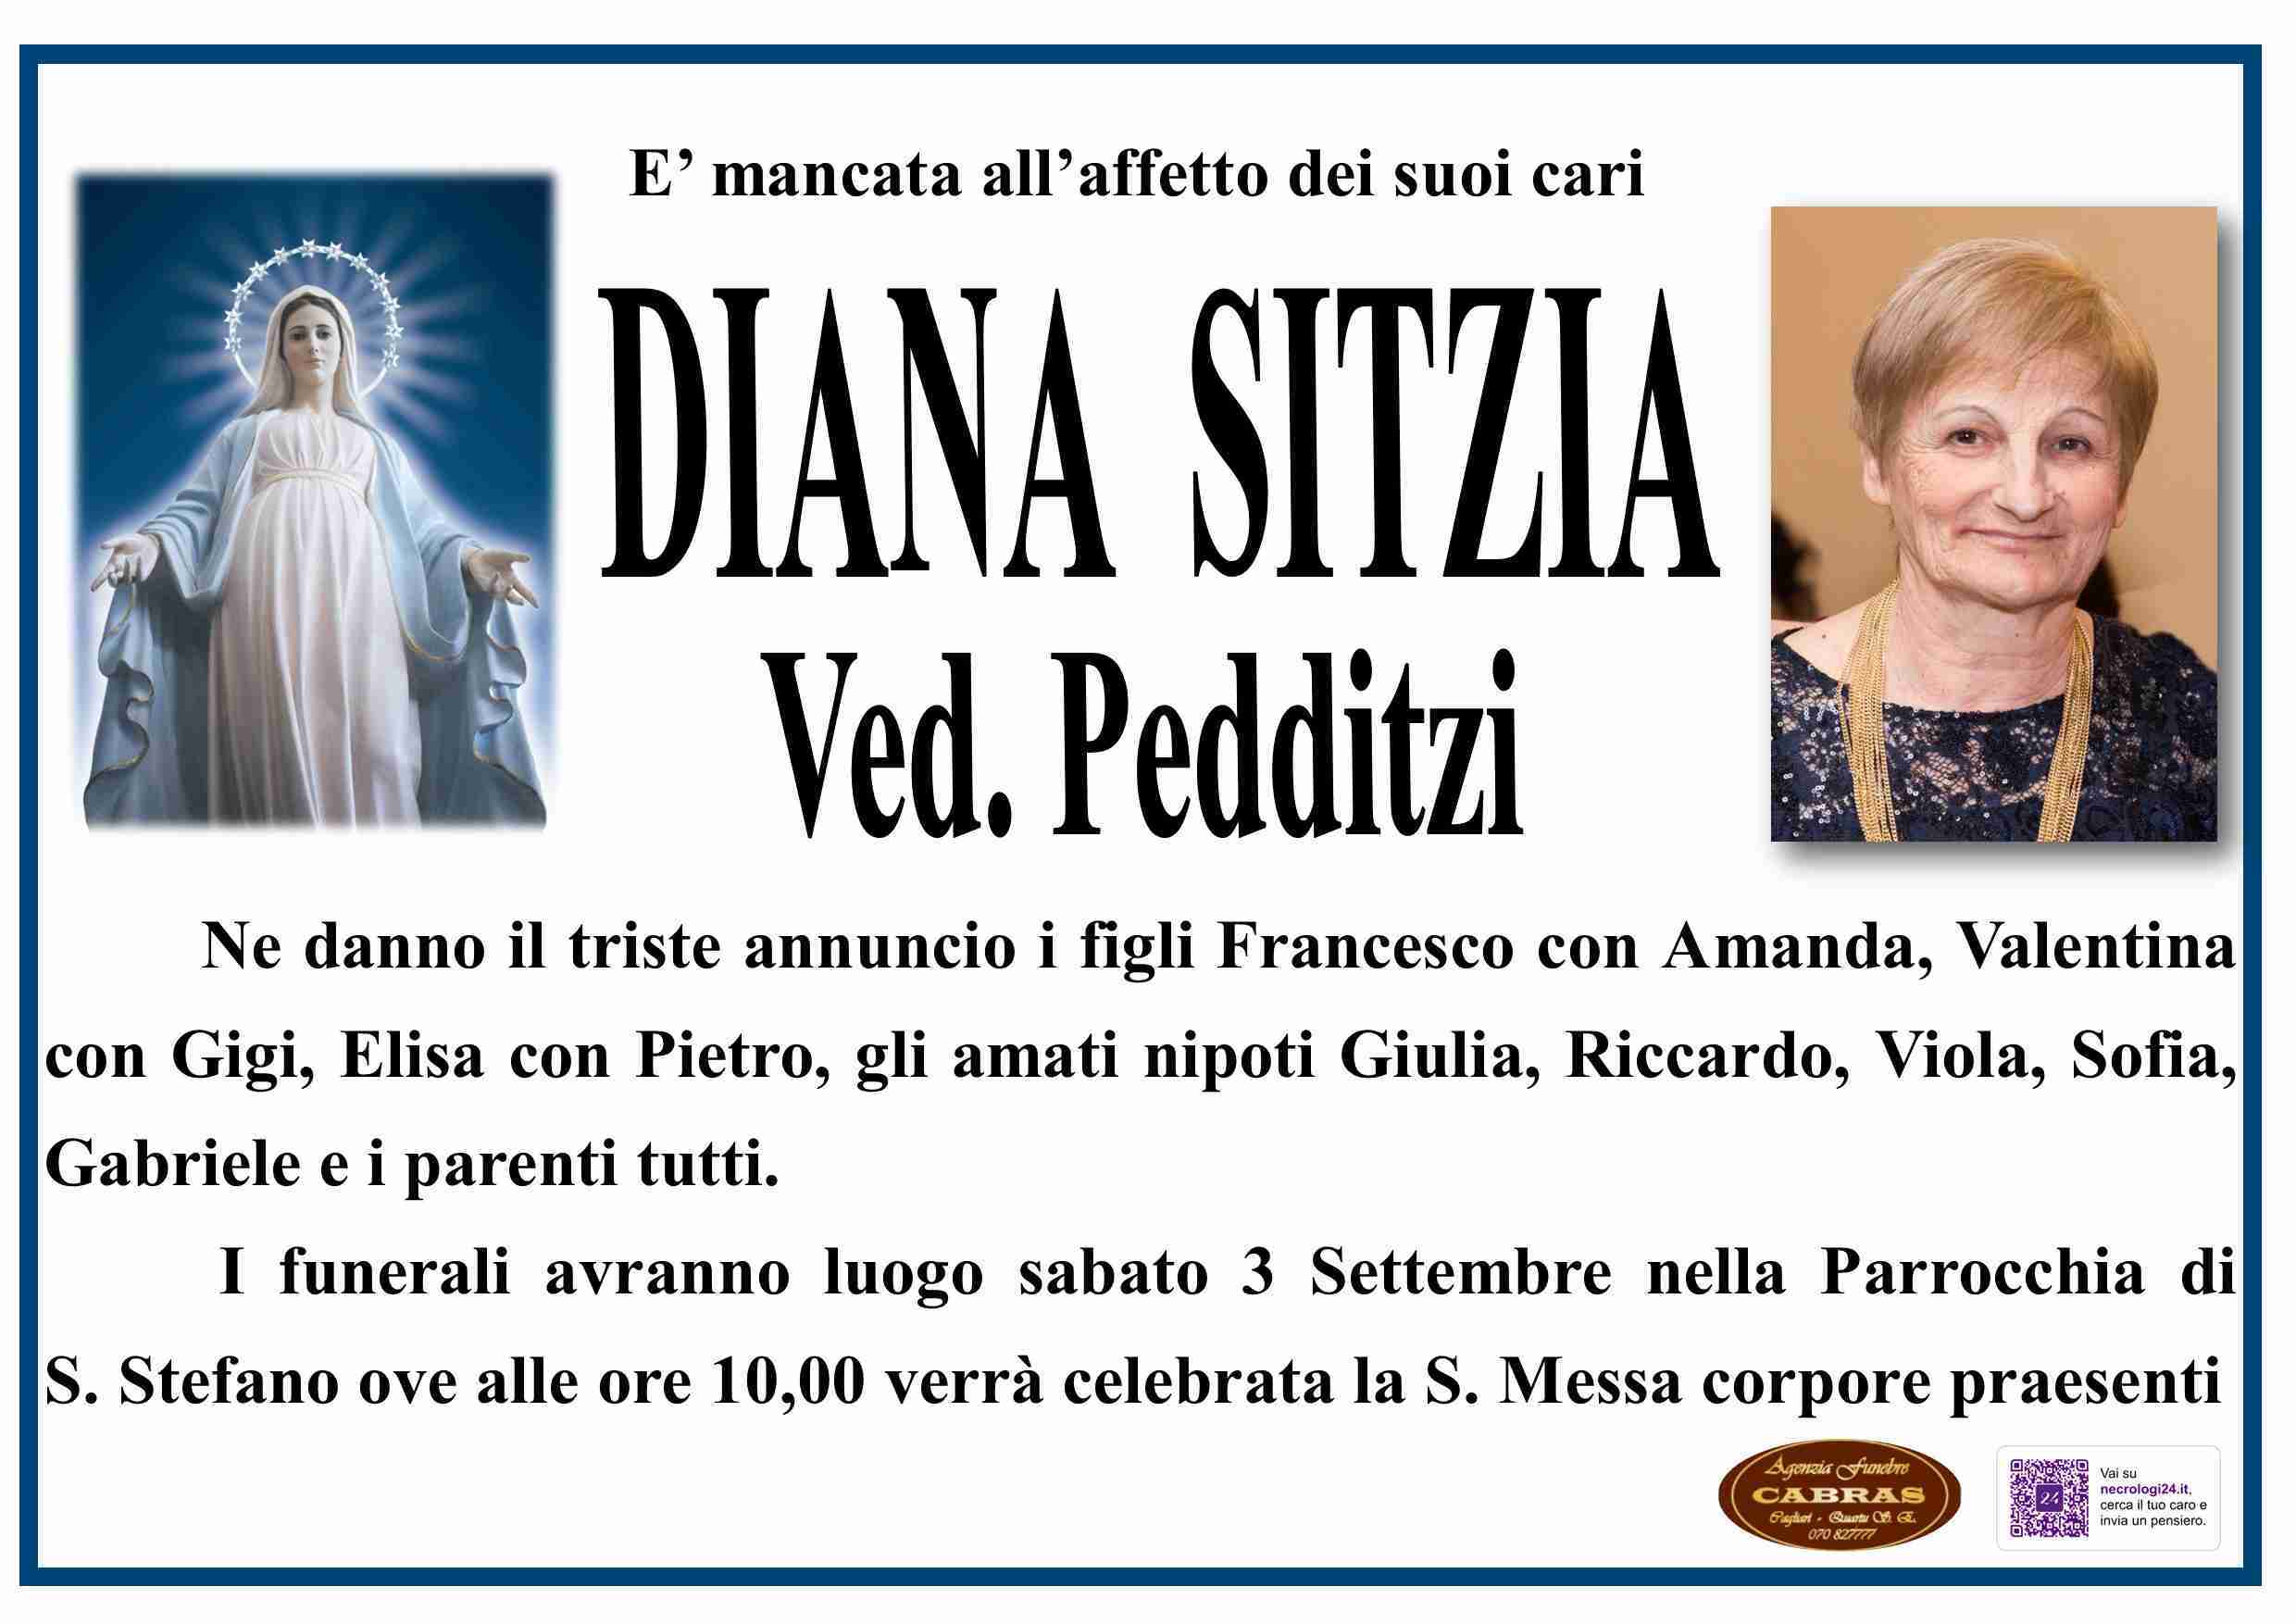 Diana Sitzia